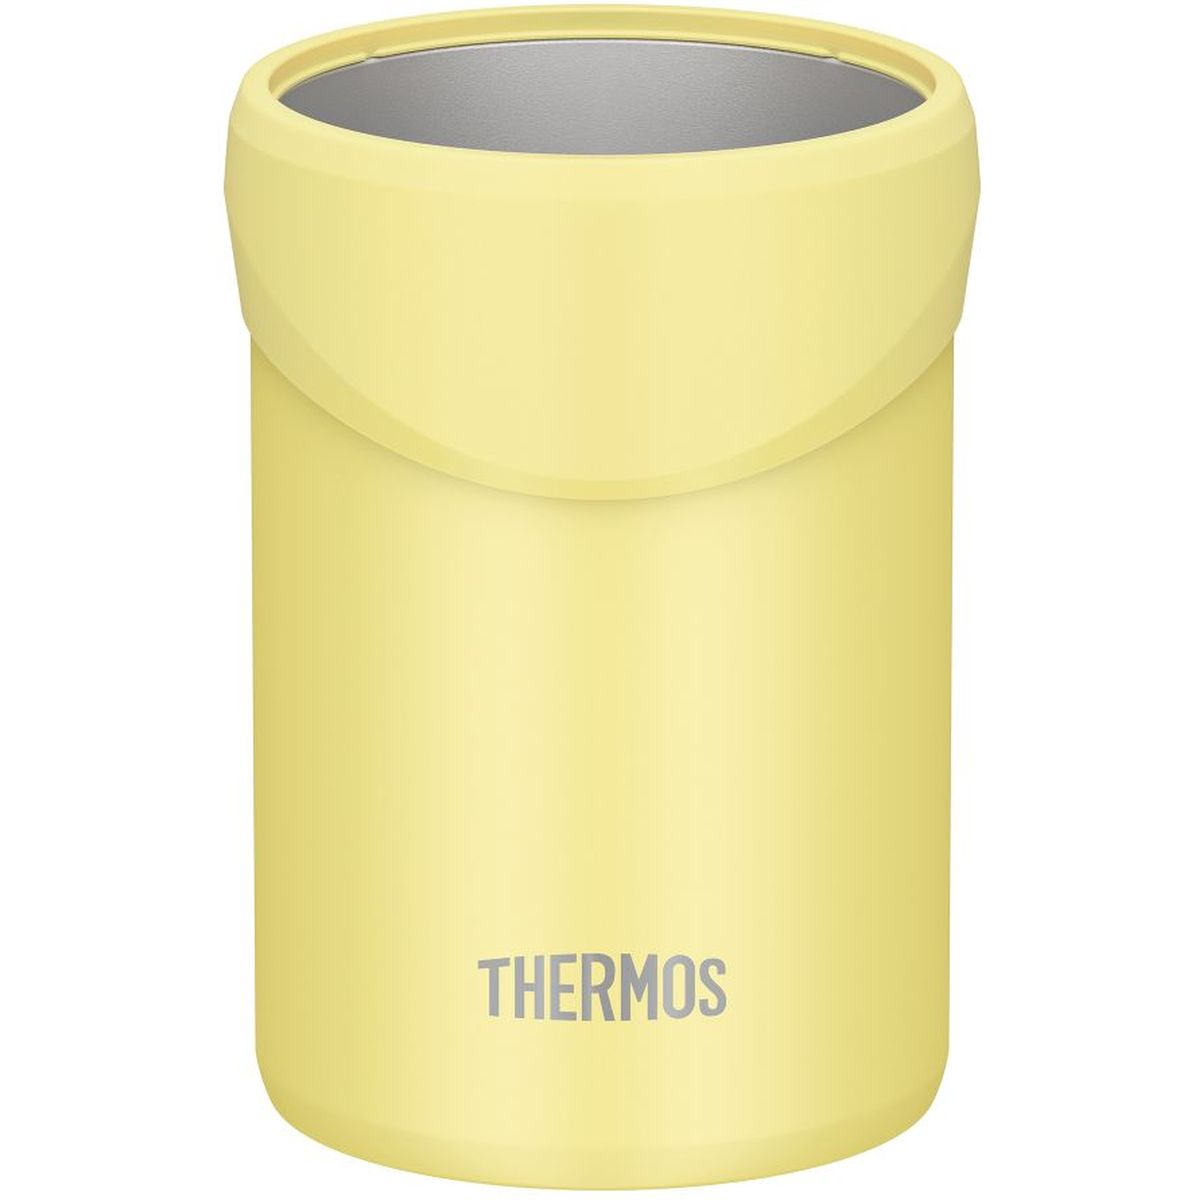 THERMOS 保冷缶ホルダー イエロー 350・500mL缶対応 真空断熱 保温保冷